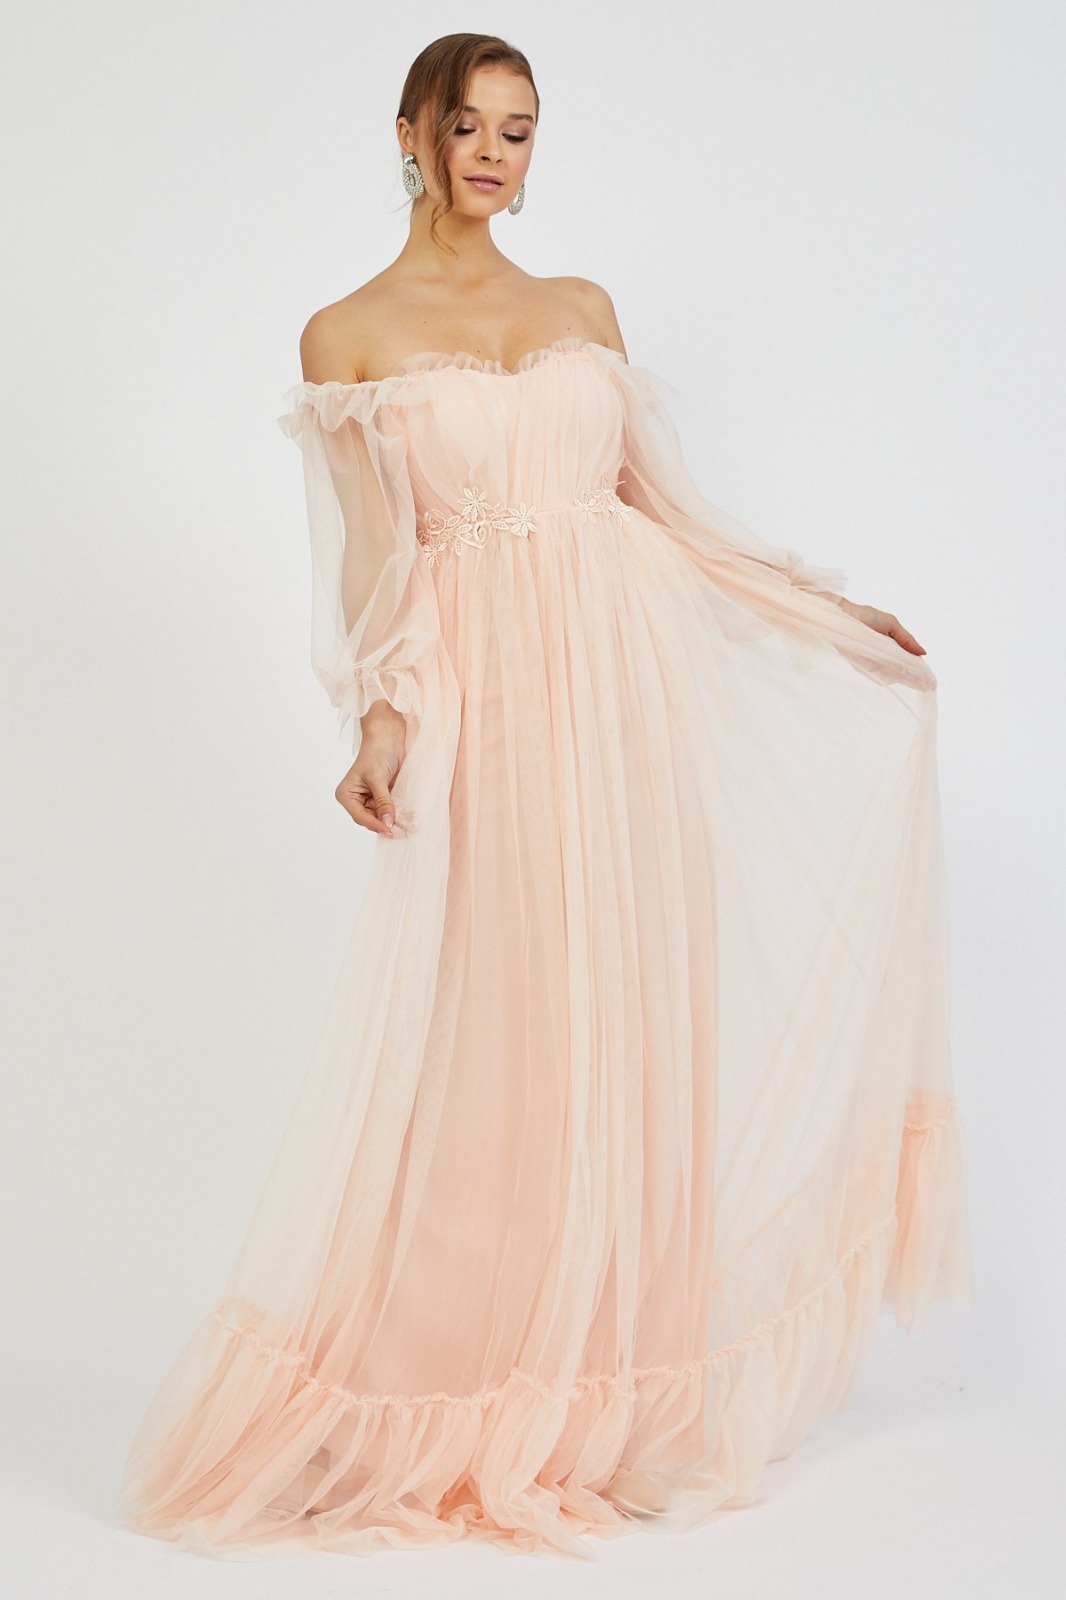 Almira Bayan Tül Detay Tasarım Abiye Elbise (0168)